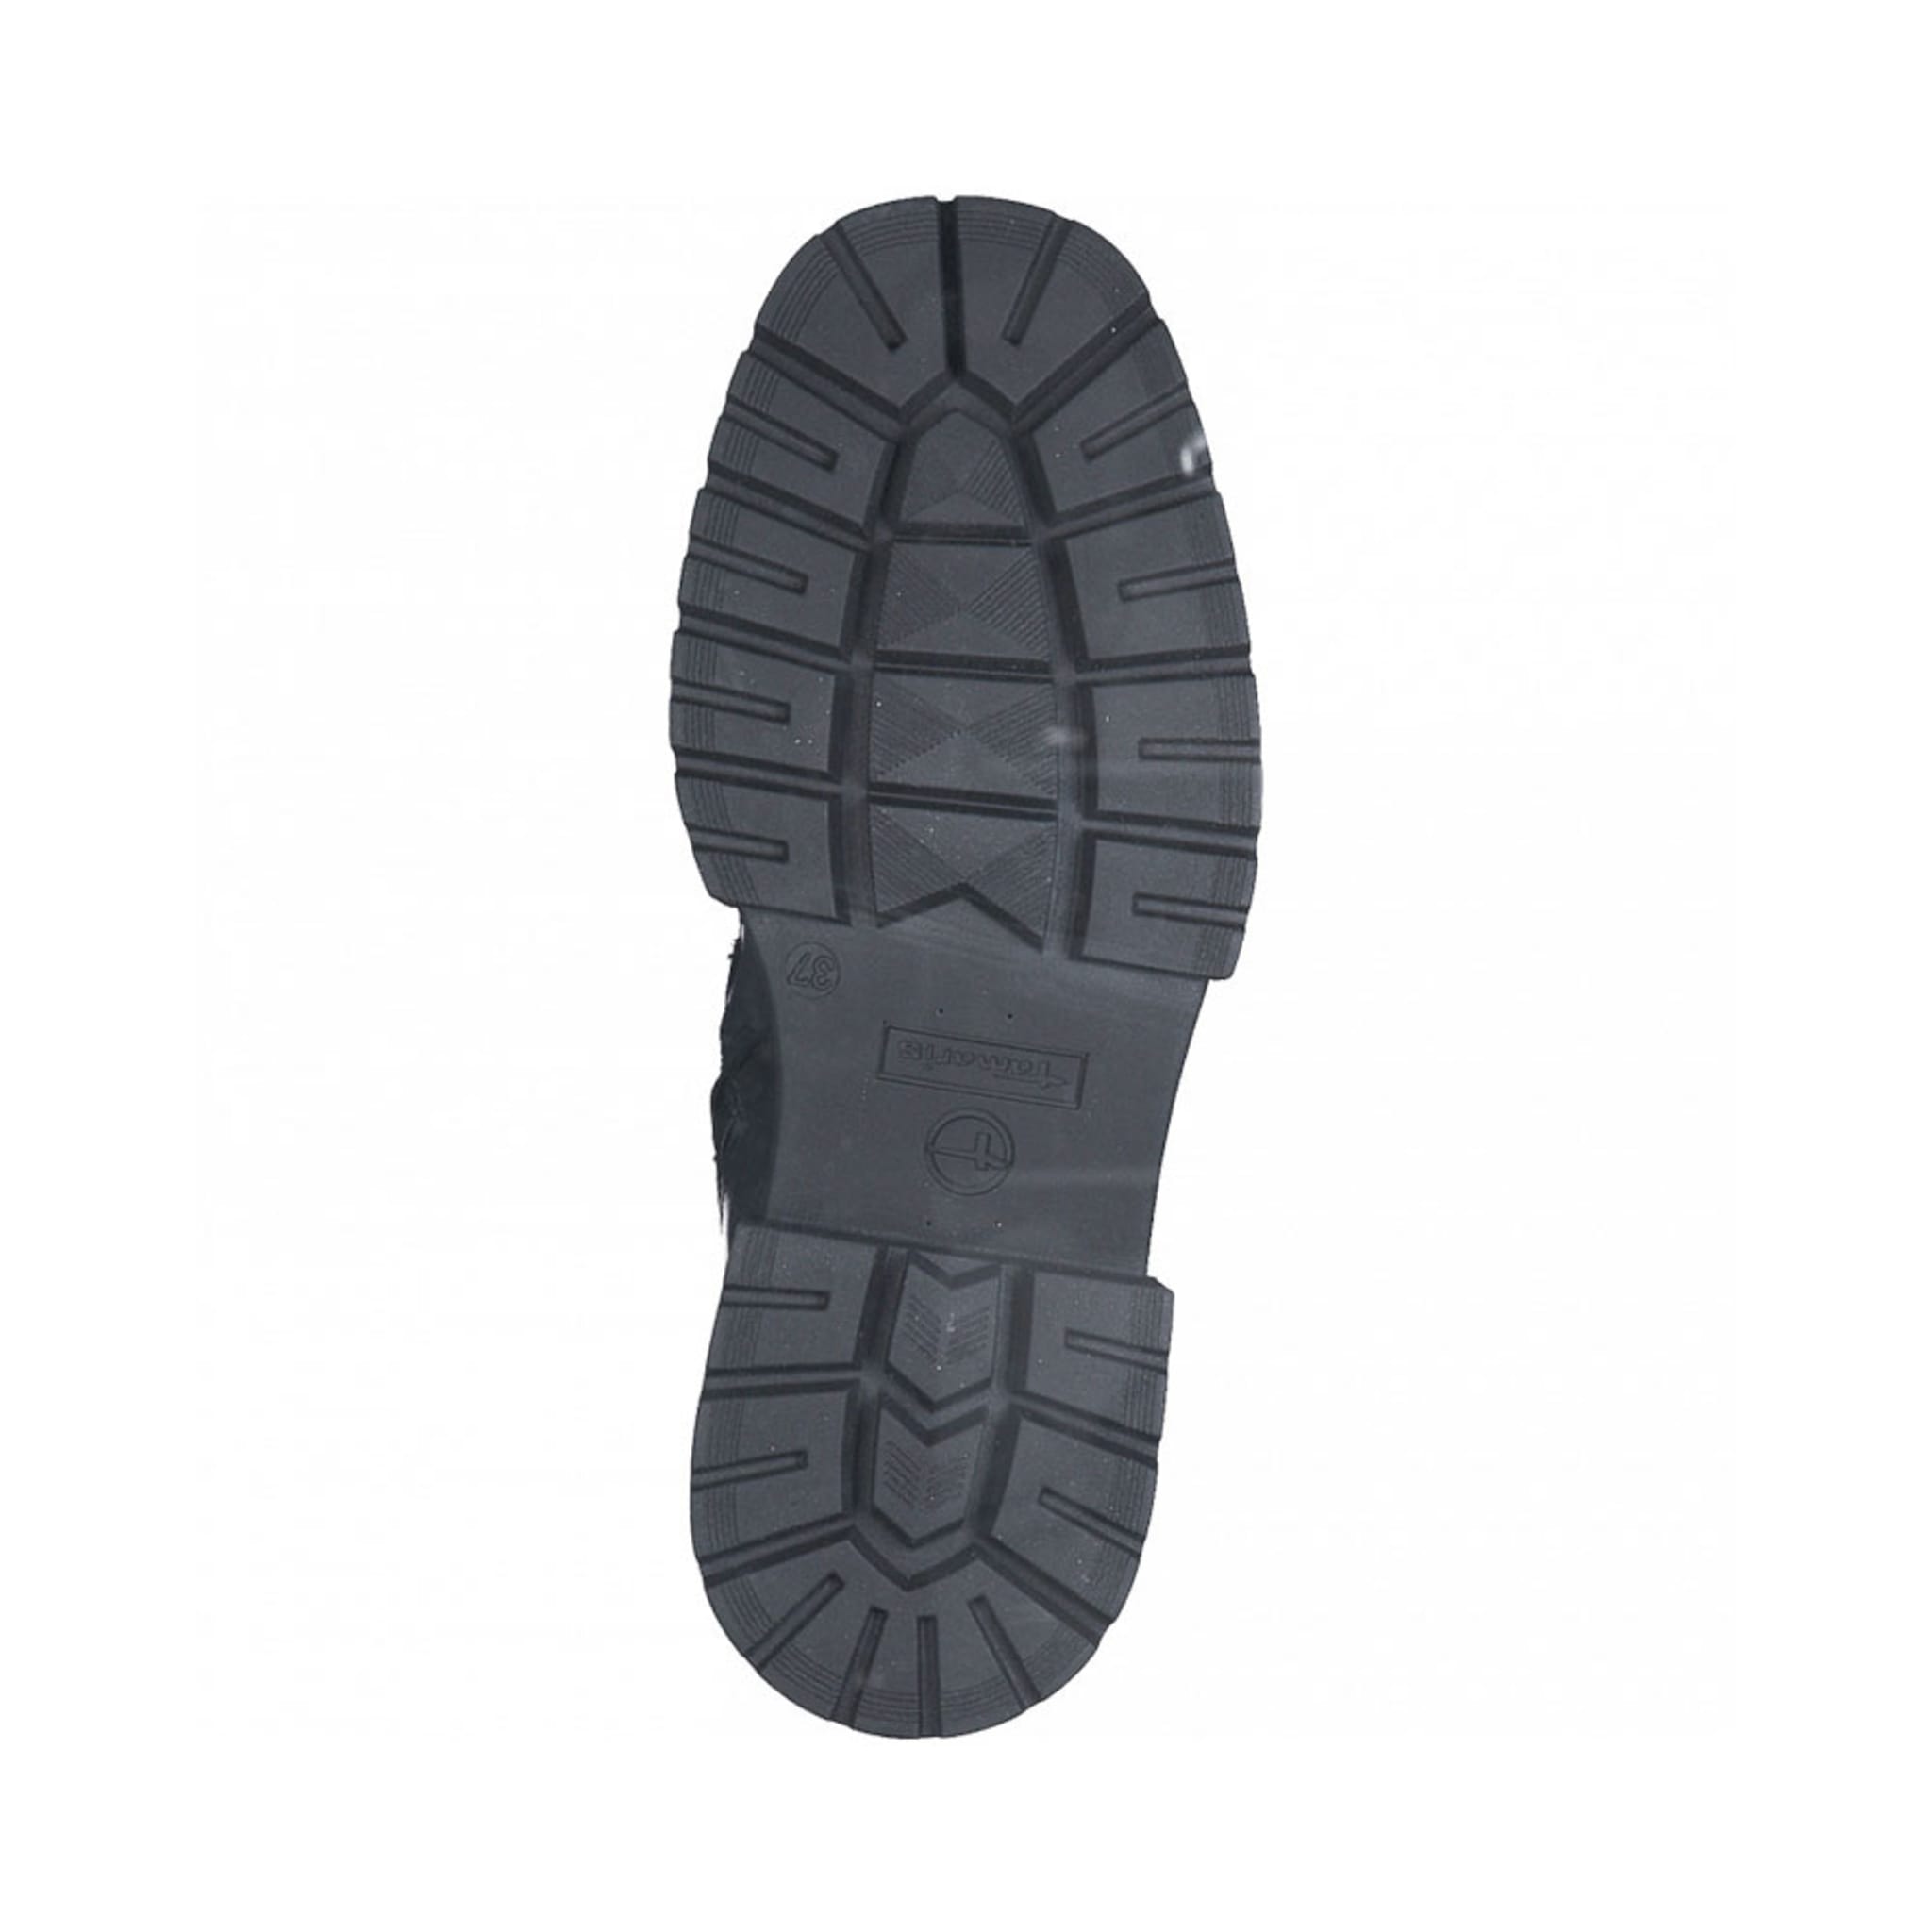 Loafer Boot 1-1-25463-29, Black